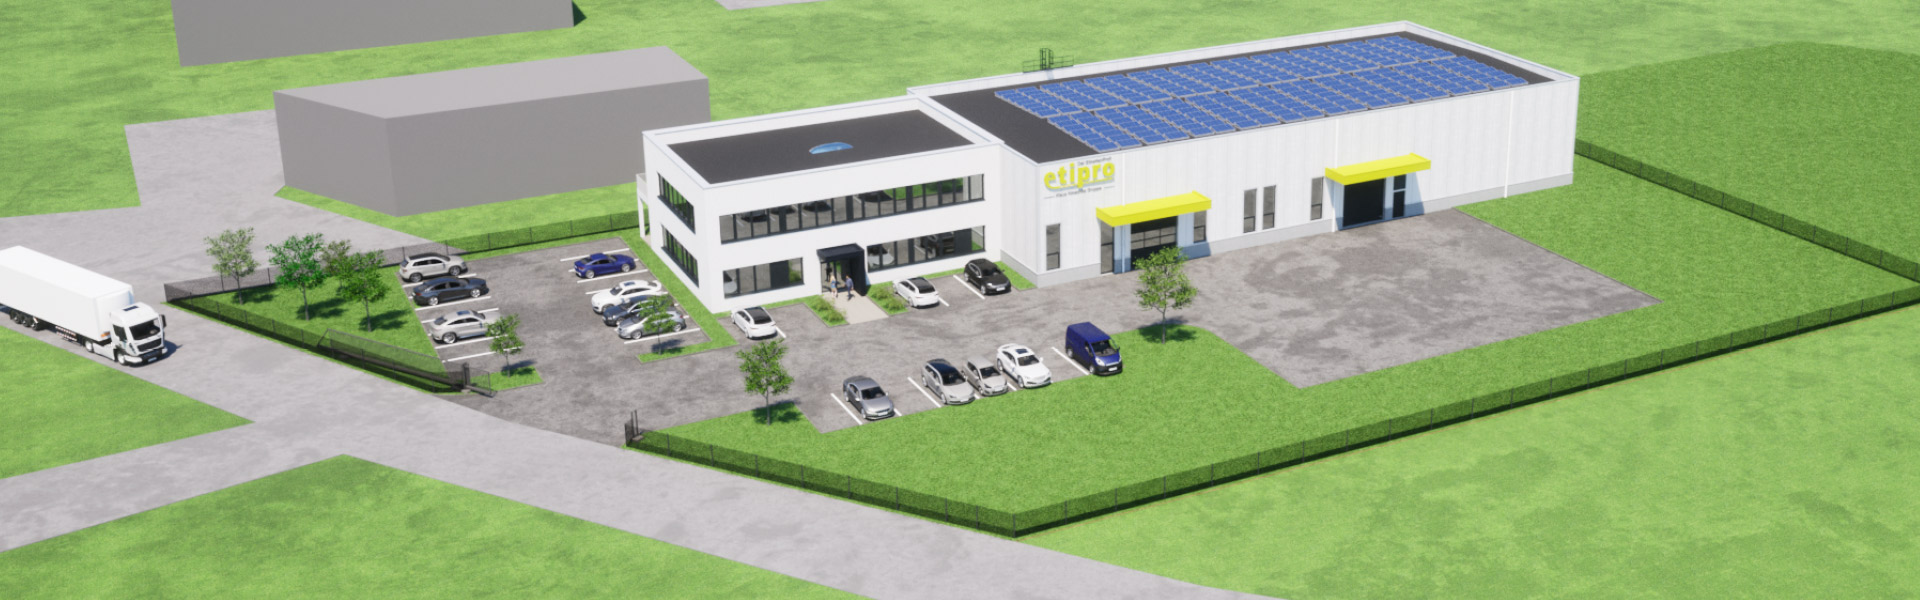 Planungsansicht des neuen Firmensitzes der Etipro GmbH in Pichl